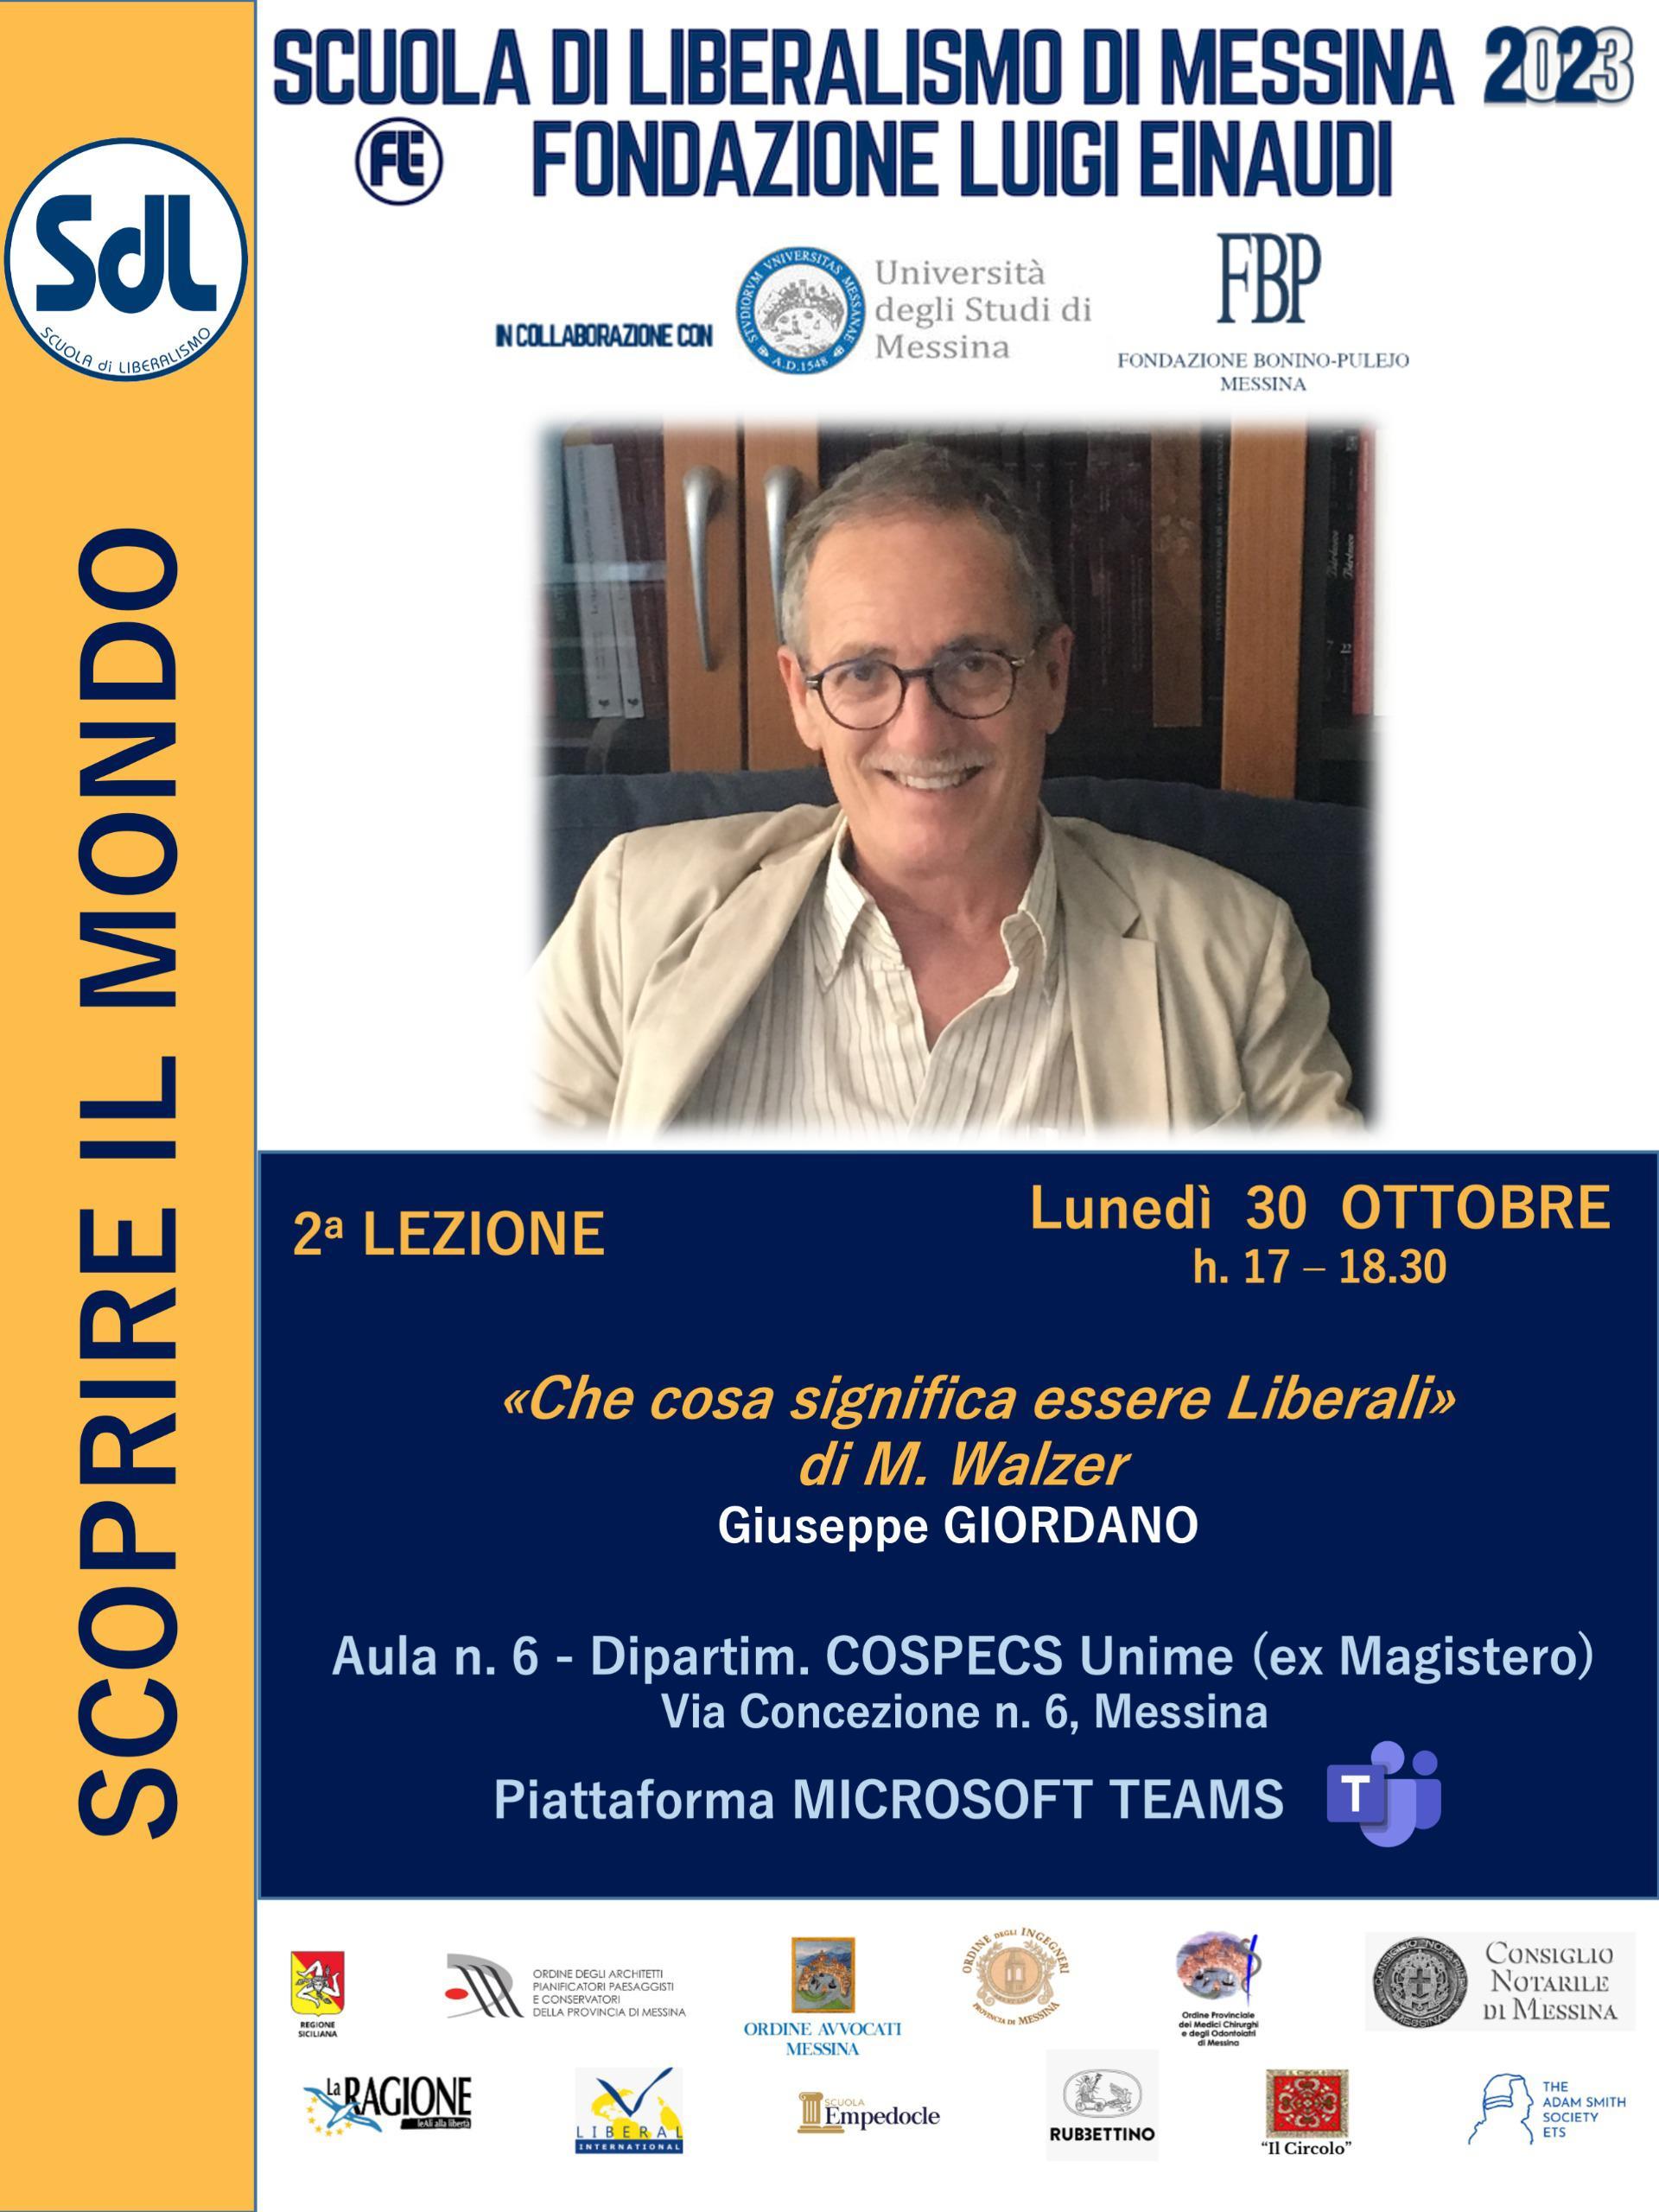 Scuola di Liberalismo 2023 – Messina: lezione del prof. Giuseppe Giordano sul tema “Che cosa significa essere liberali”